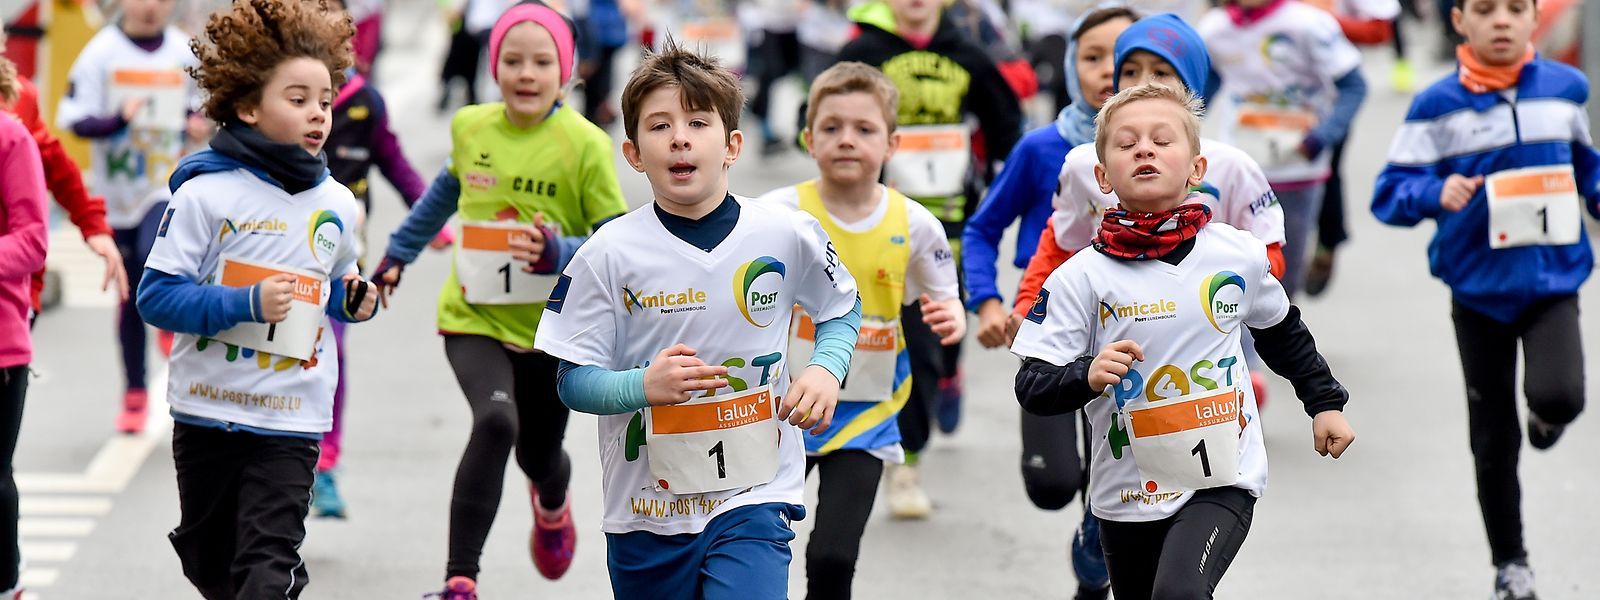 La course se déroule sur 10 km pour les adultes et sur 500 ou 1000 mètres pour les enfants.